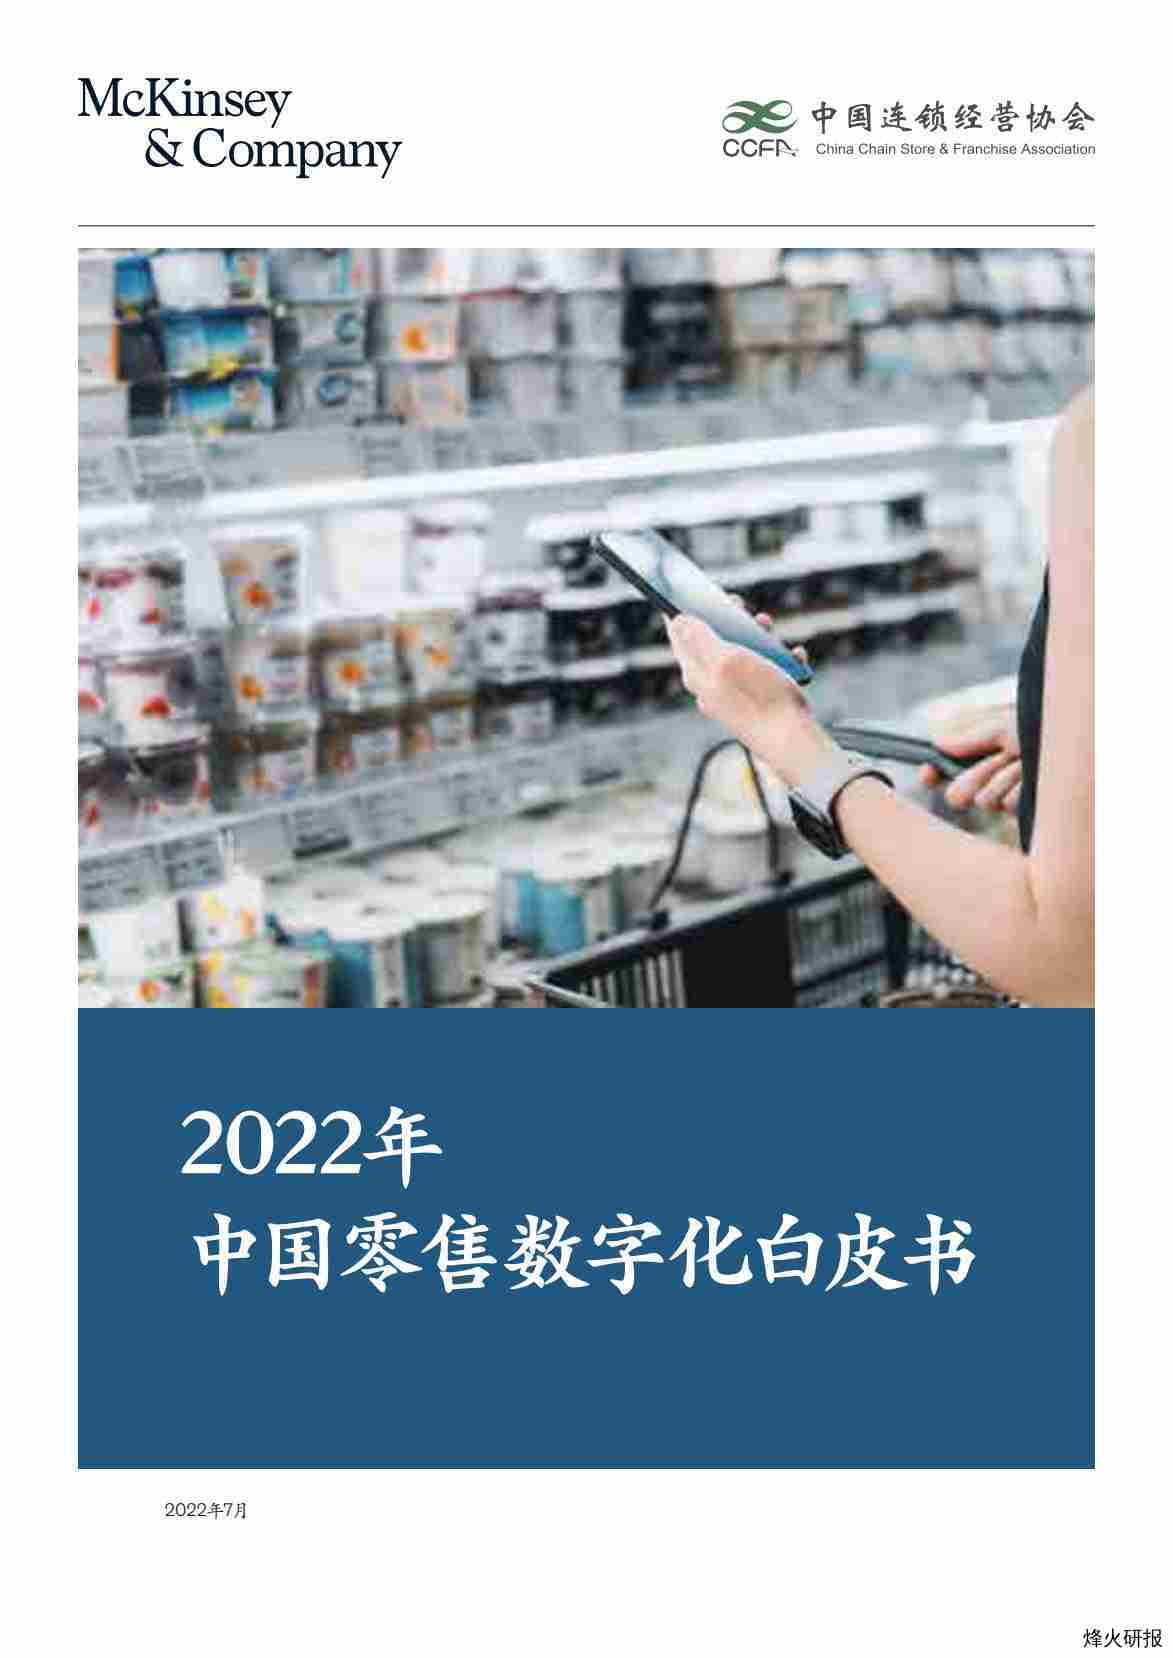 【中国连锁经营协会】麦肯锡_CCFA_2022年中国零售数字化白皮书.pdf-第一页